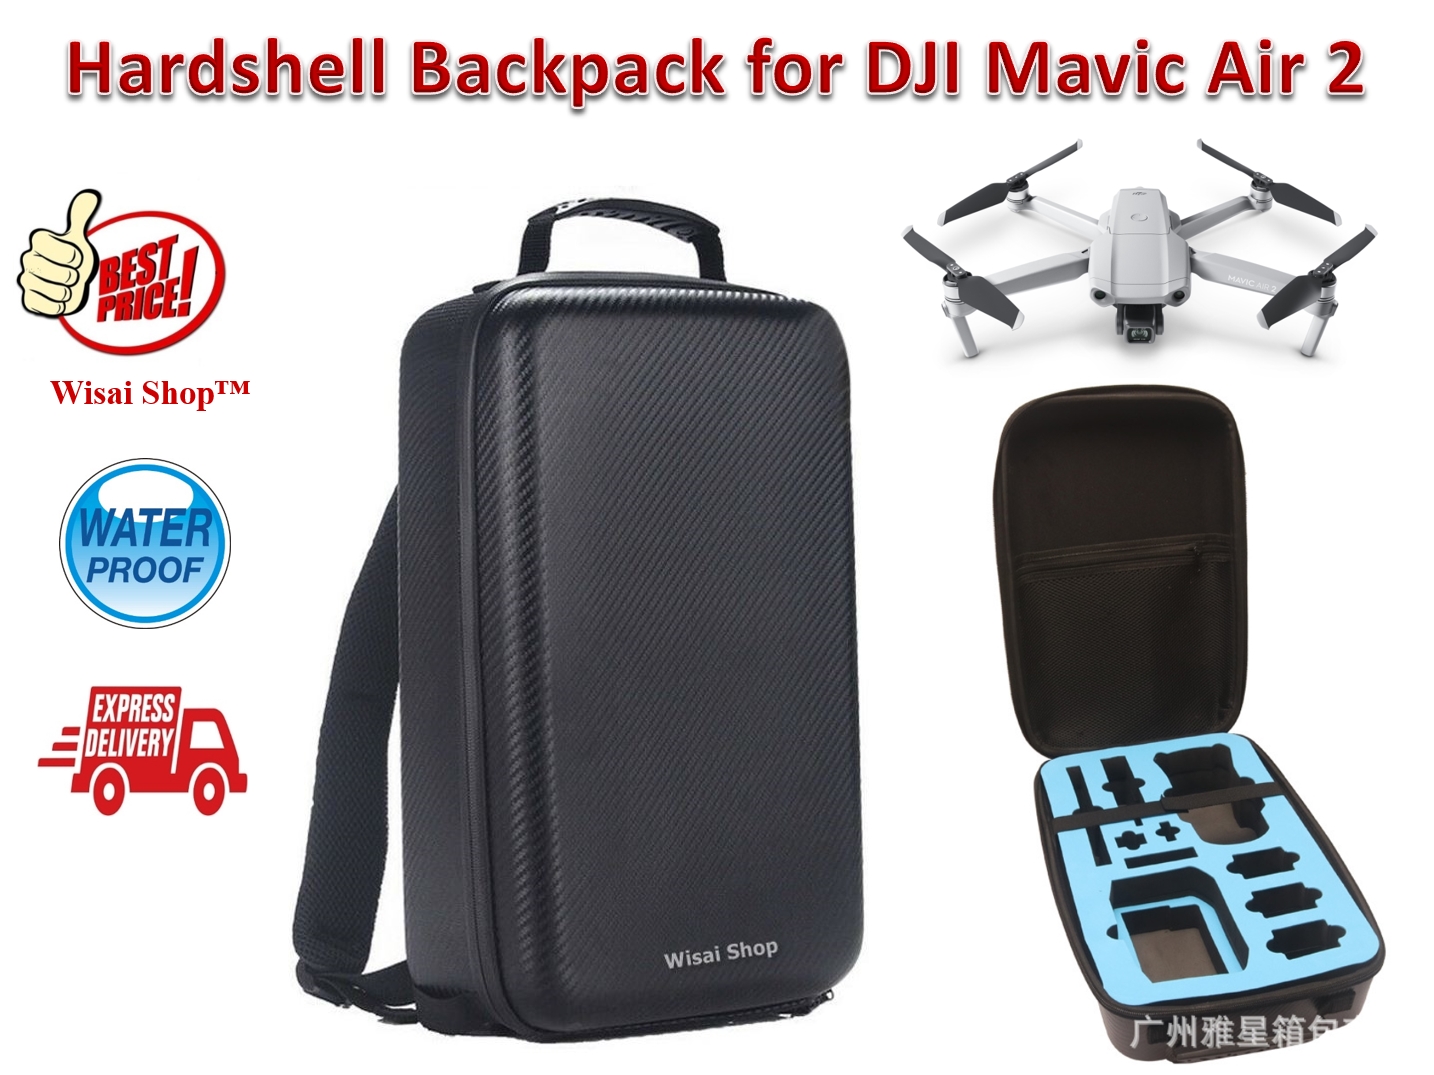 กระเป๋าเป้ Hardshell Backpack สำหรับ DJI Mavic Air 2 / DJI Air 2S